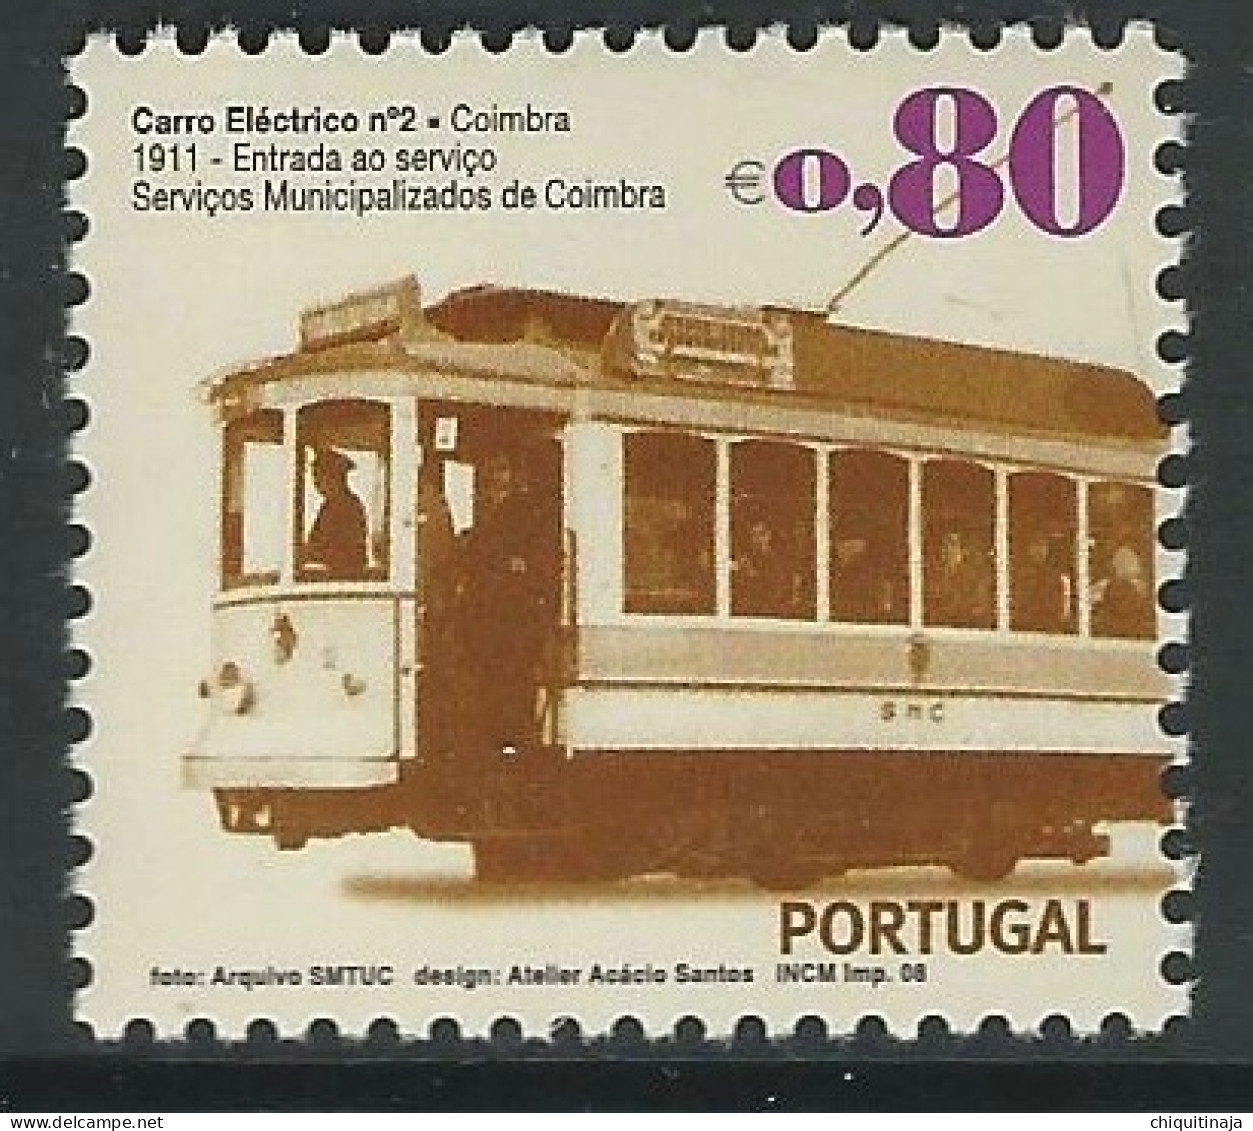 Portugal 2008 “Transportes Urbanos” MNH/** - Nuevos